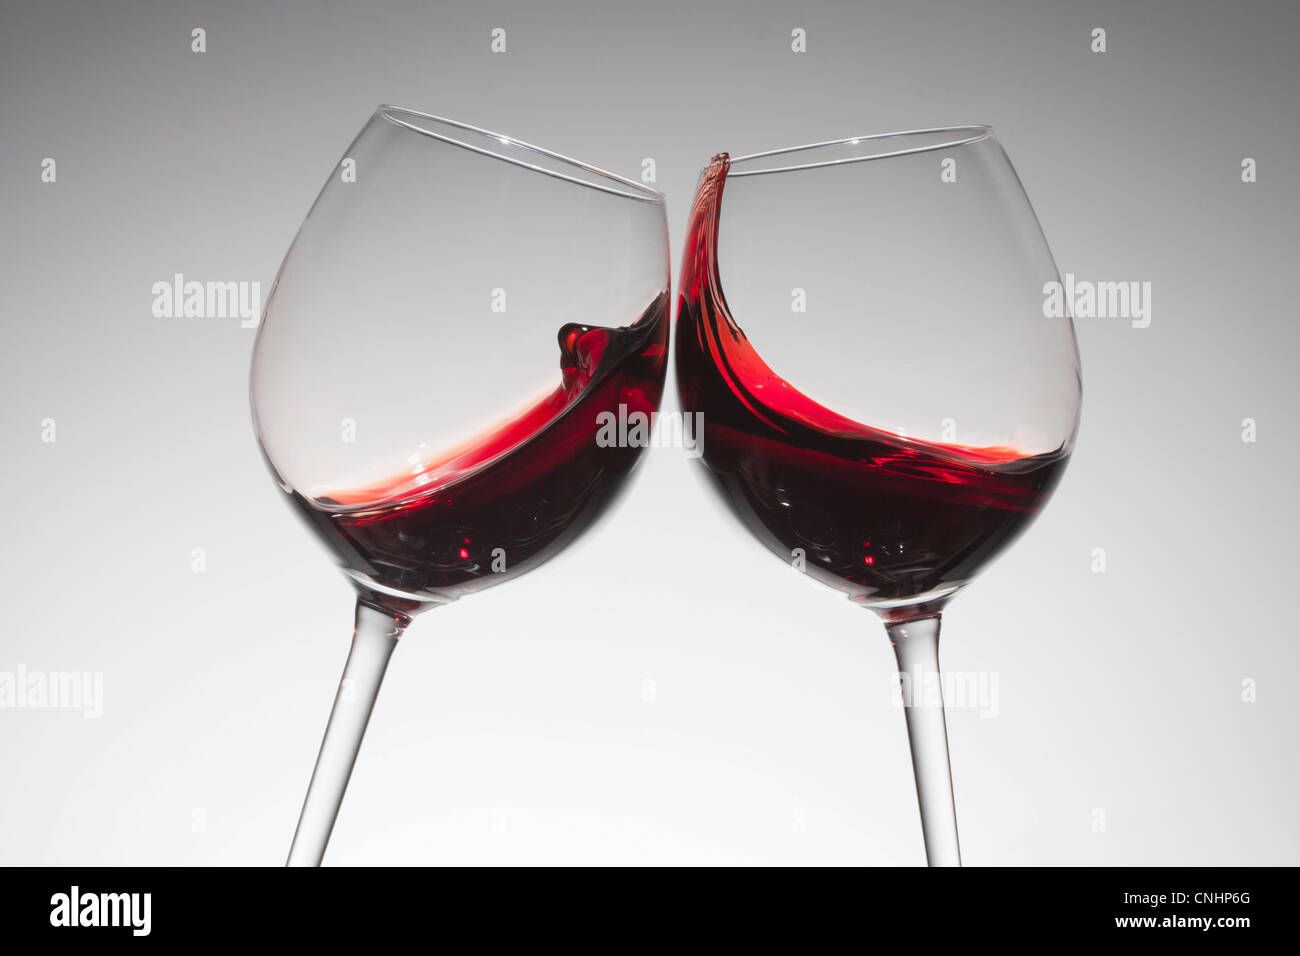 Le grillage avec deux verres de vin rouge Banque D'Images